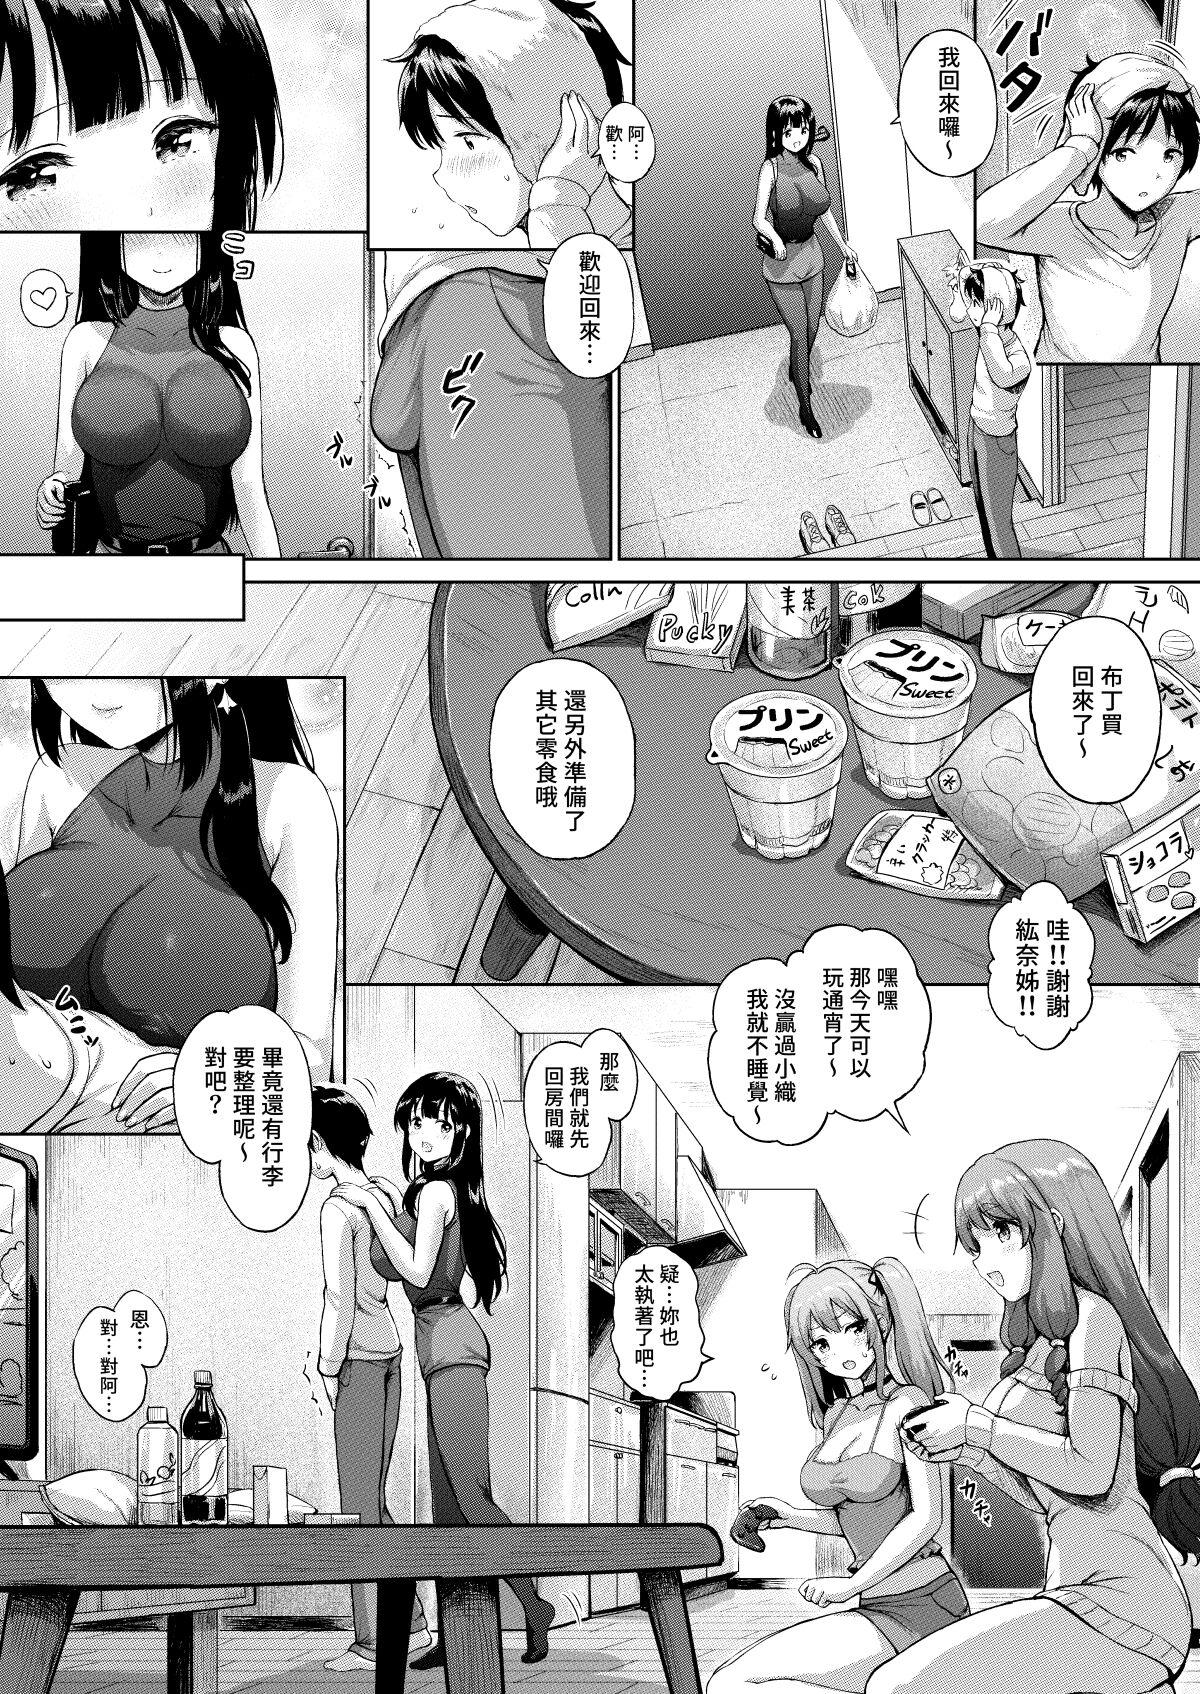 Sanshimai Manga ep1 p1-20 11